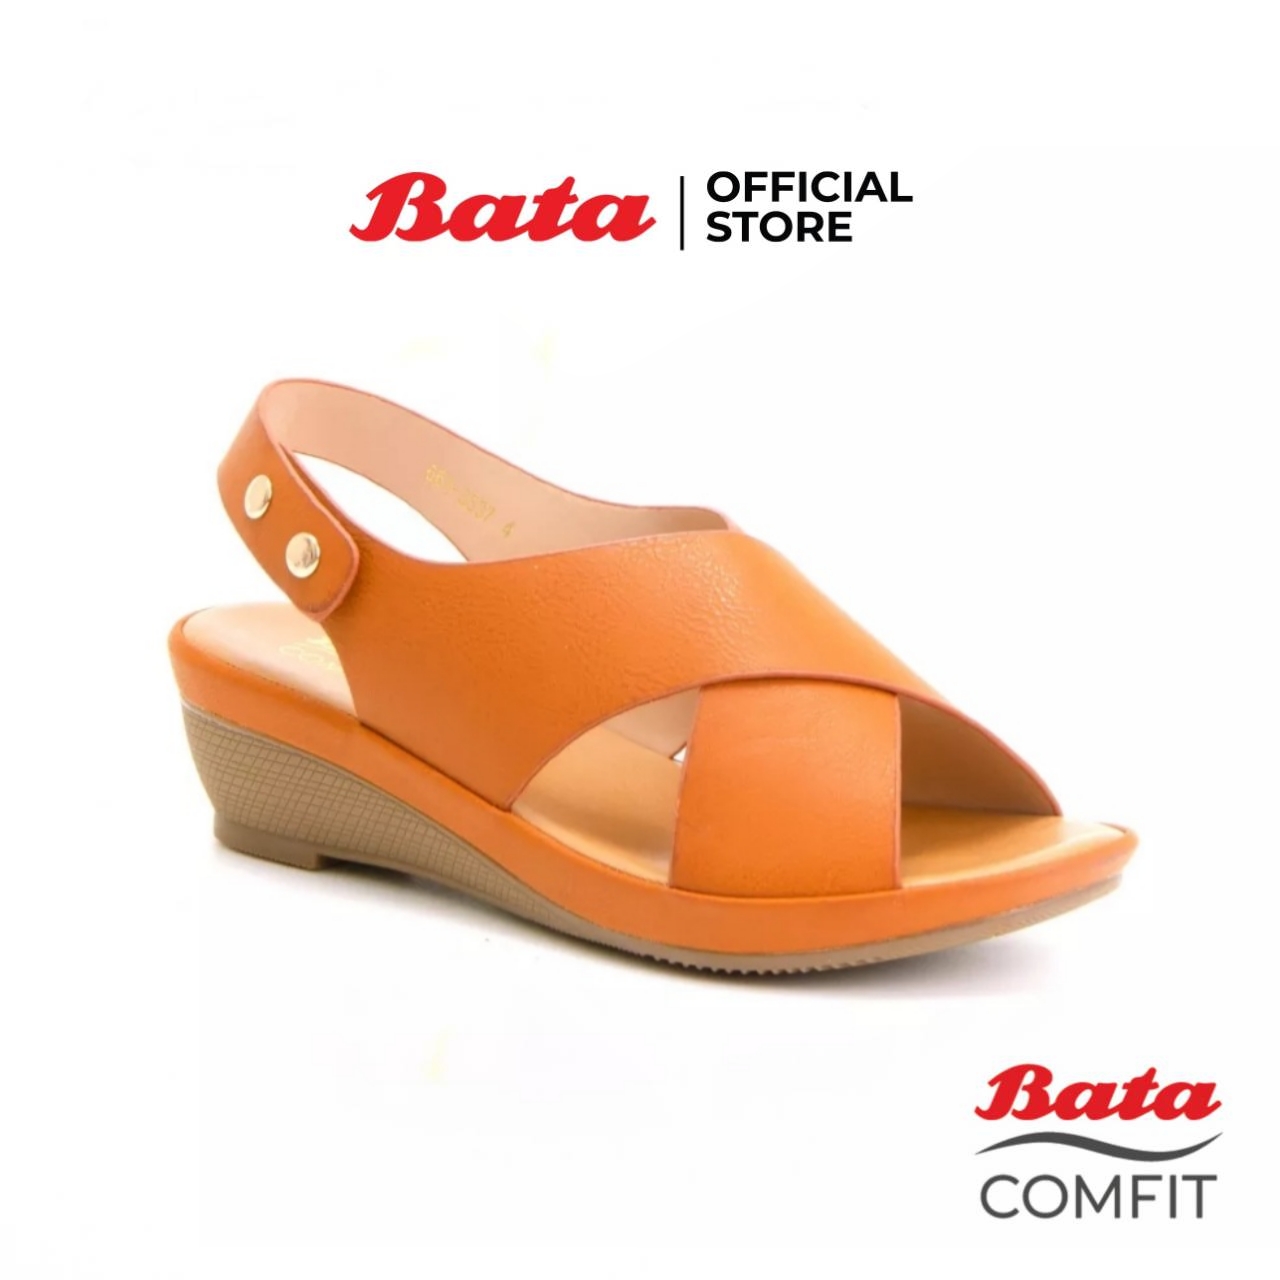 Bata COMFIT รองเท้าส้นสูง WEDGE SANDAL แบบรัดส้น สูง 1.5 นิ้ว สีน้ำตาลอมเหลือง รหัส 6613537 Ladiescomfort Fashion